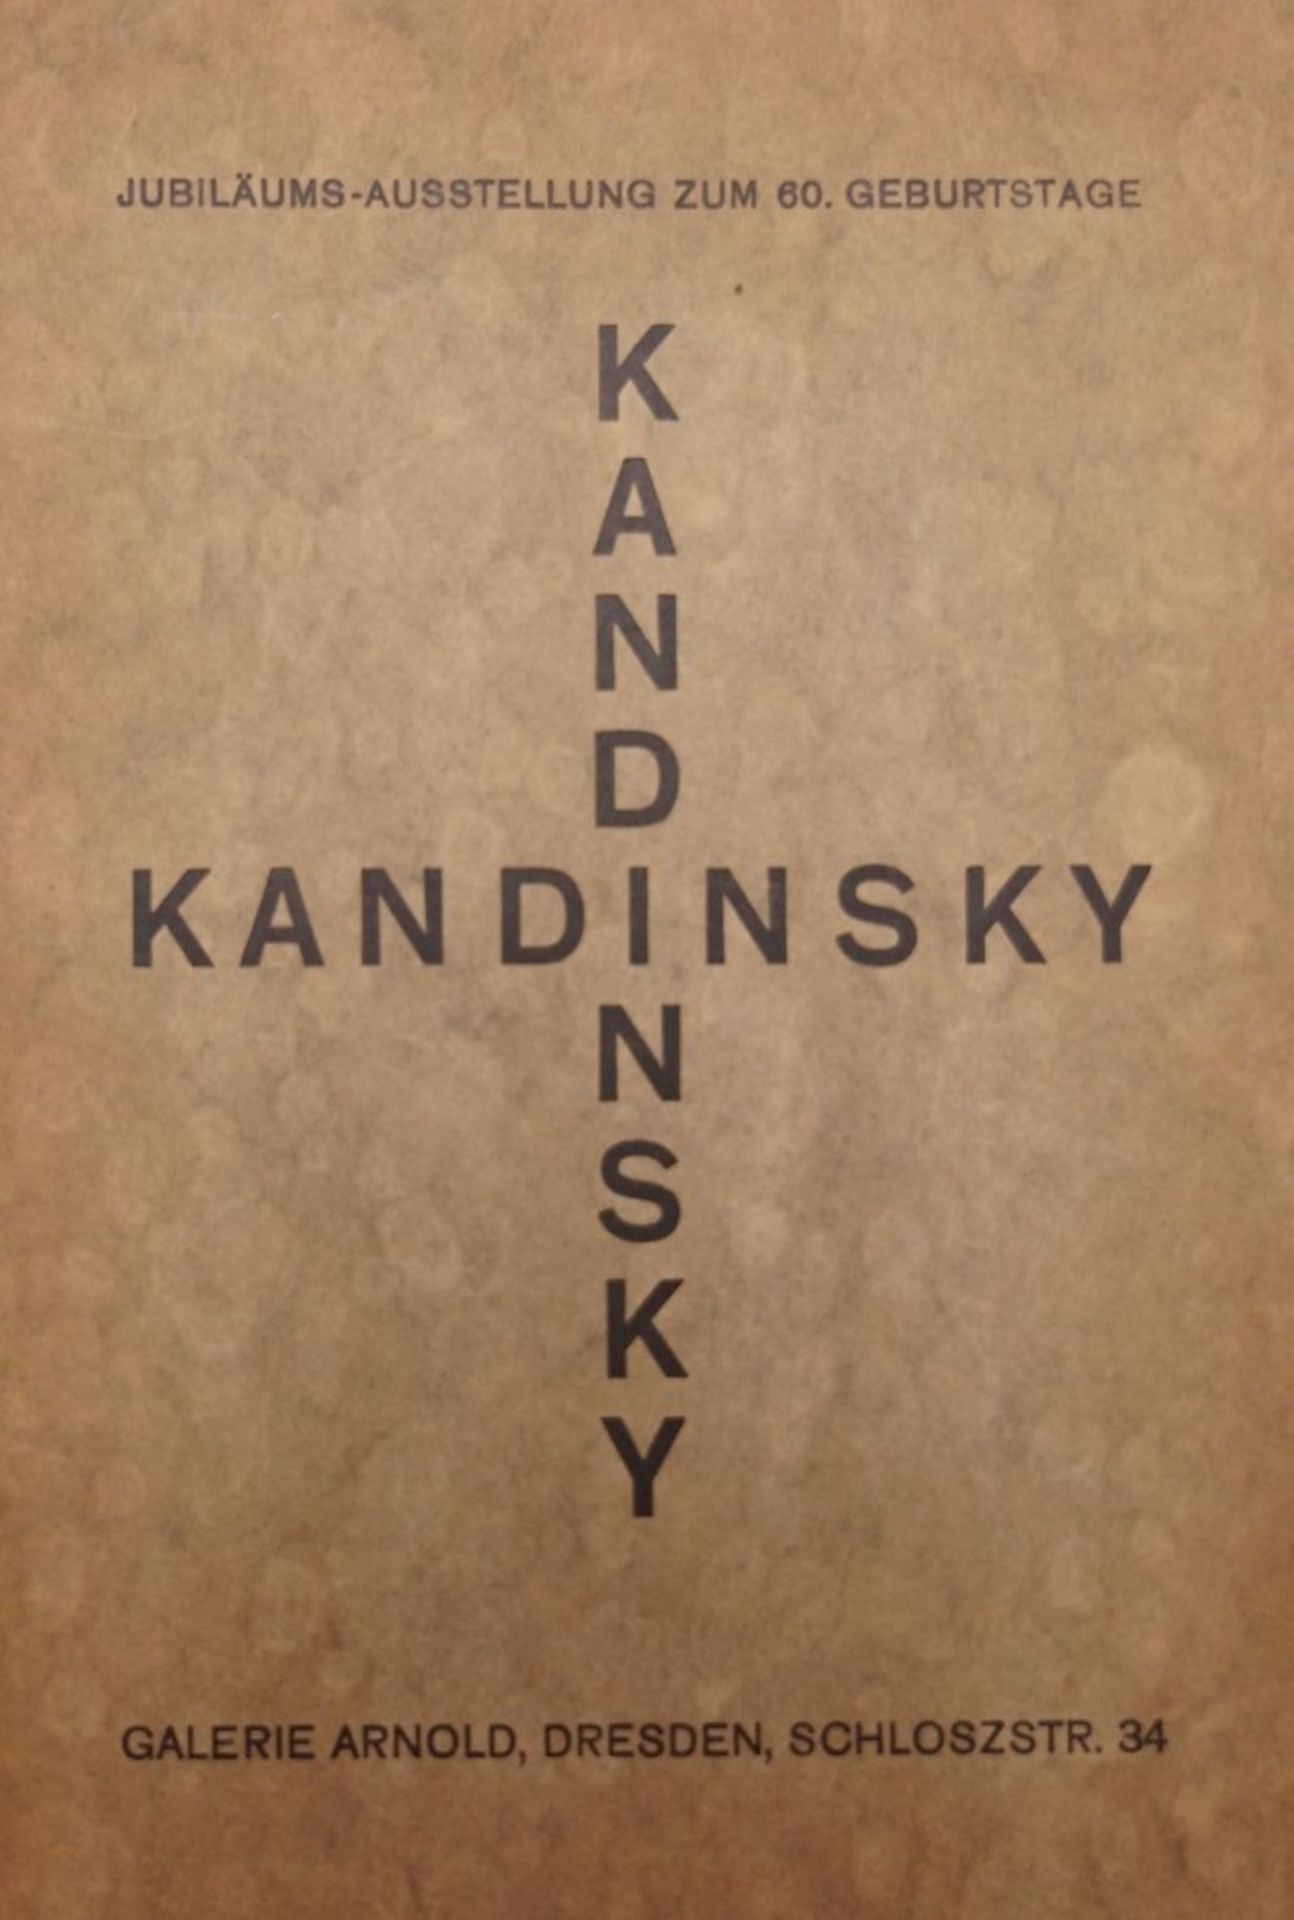 Kandinsky, Wassily und Kandinsky, W...: Jubiläums-Ausstellung zum 60. Geburtstage